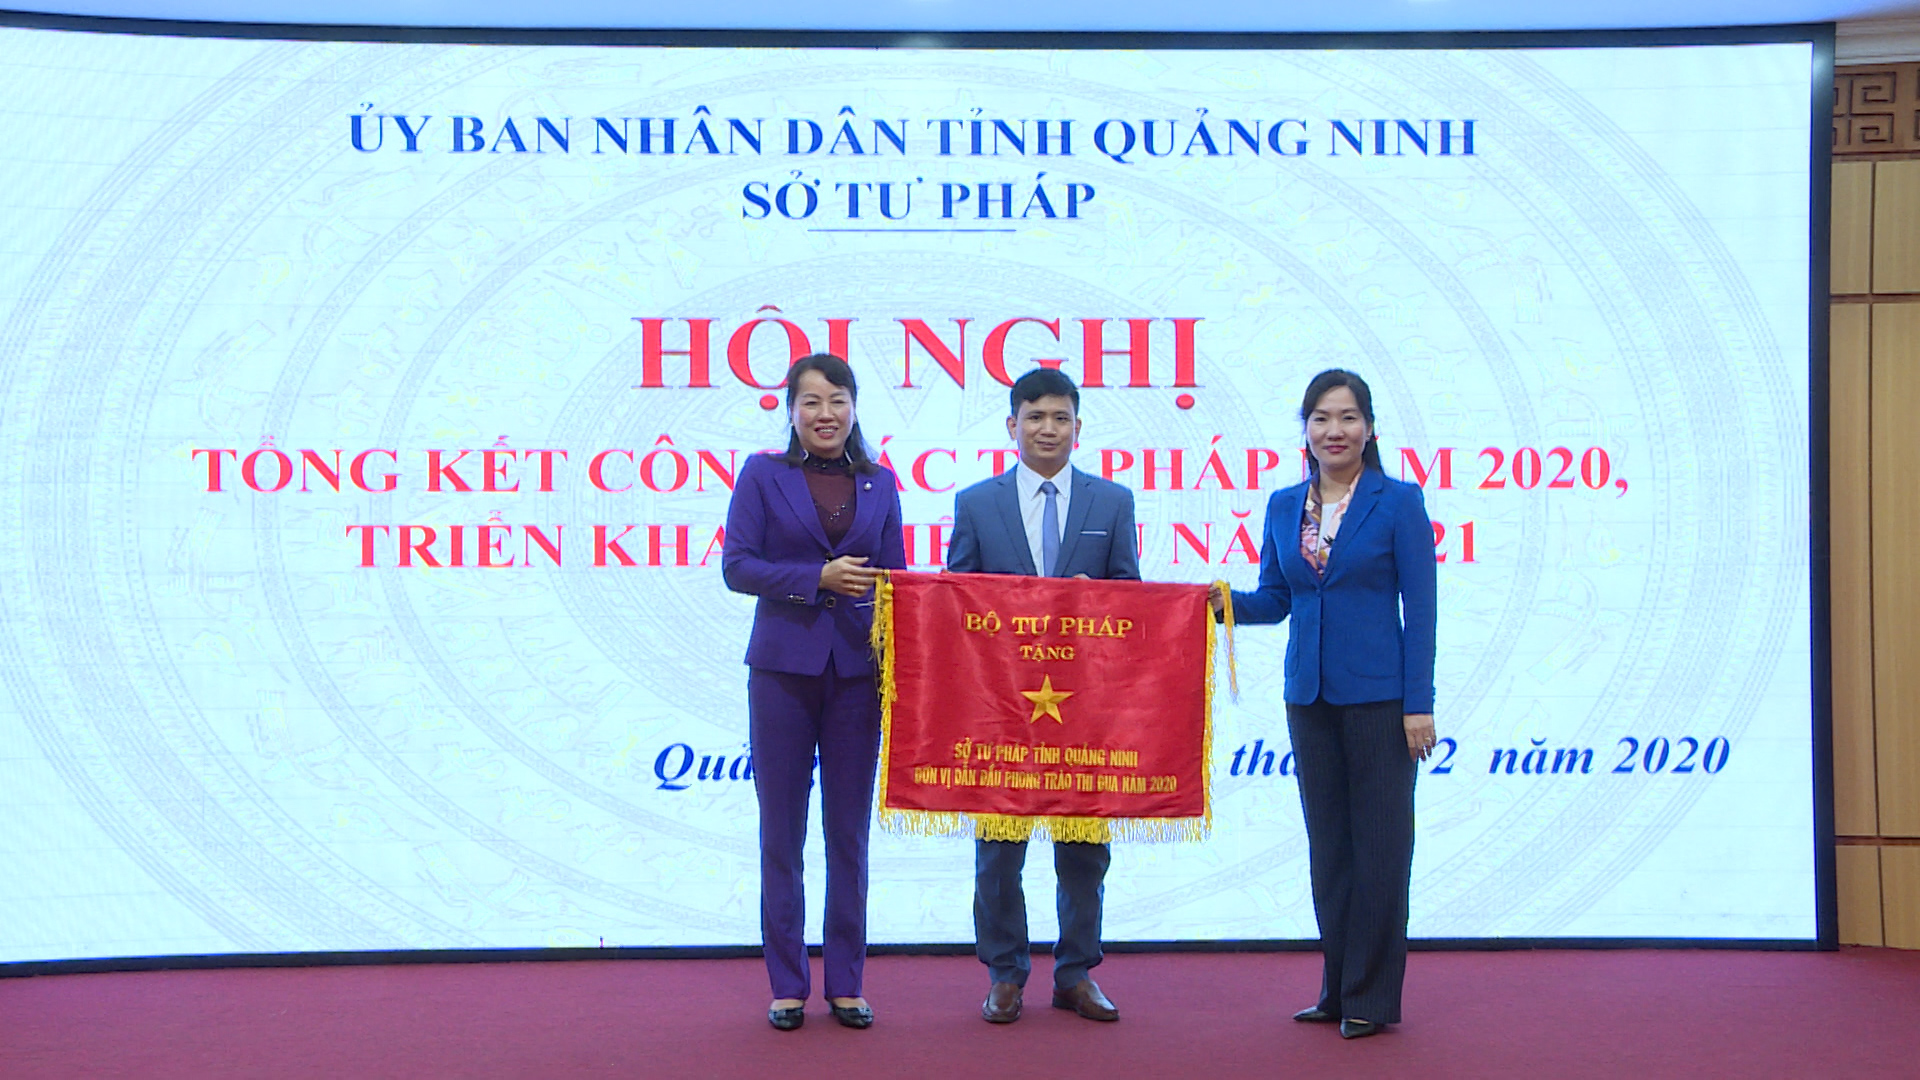 Sở Tư pháp tỉnh Quảng Ninh vinh dự nhận Cờ dẫn đầu phong trào thi đua năm 2020 của Bộ Tư pháp. Ảnh: Dương Hương